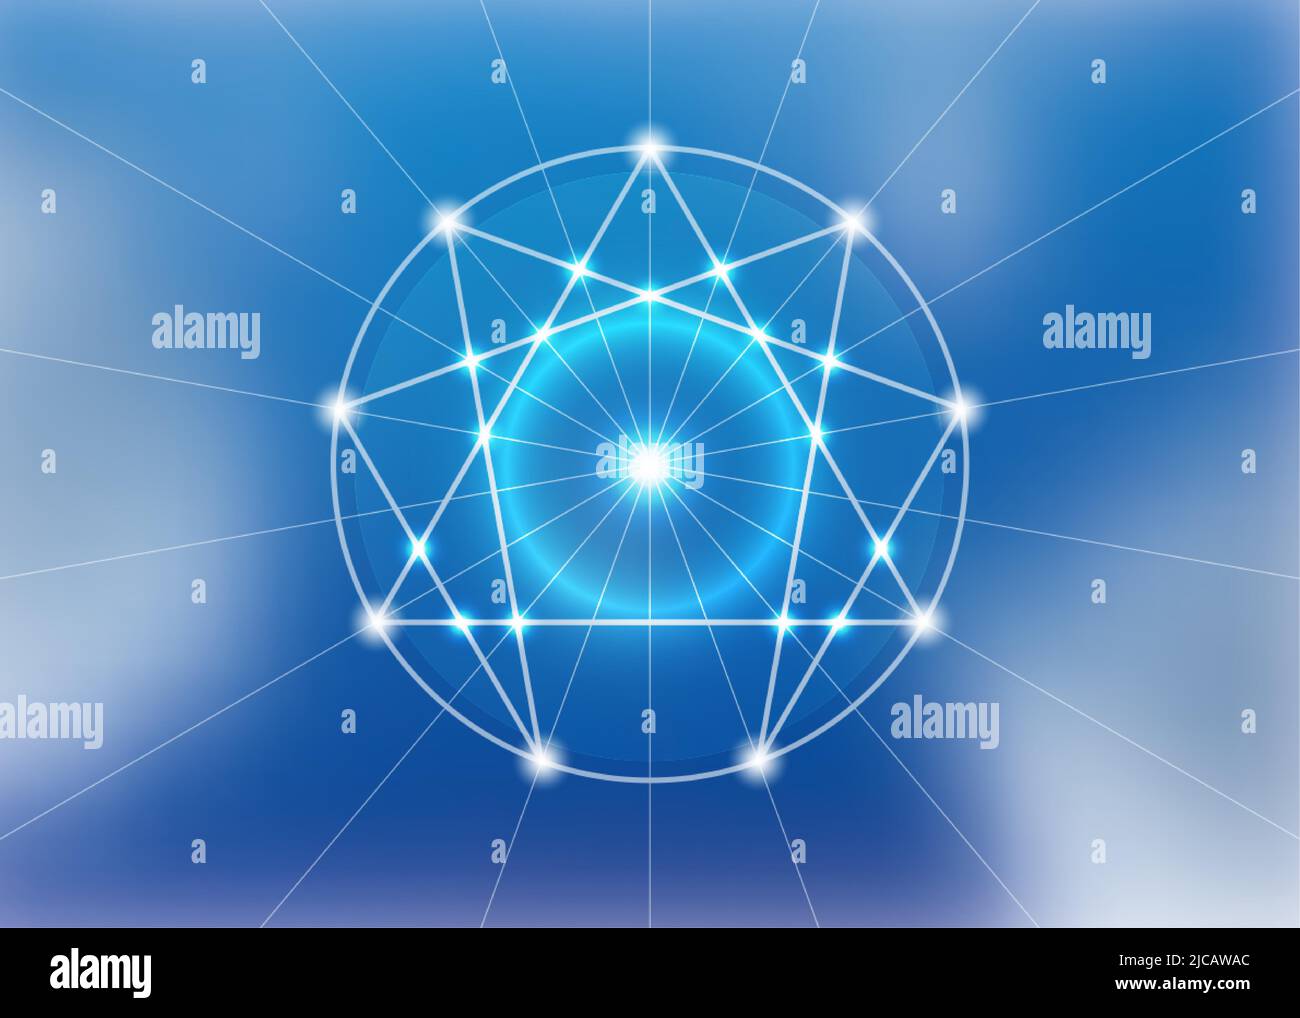 Icône Enneagram, géométrie sacrée, modèle de logo de diagramme, style de lumière néon blanche, illustration vectorielle isolée sur fond bleu ciel Illustration de Vecteur